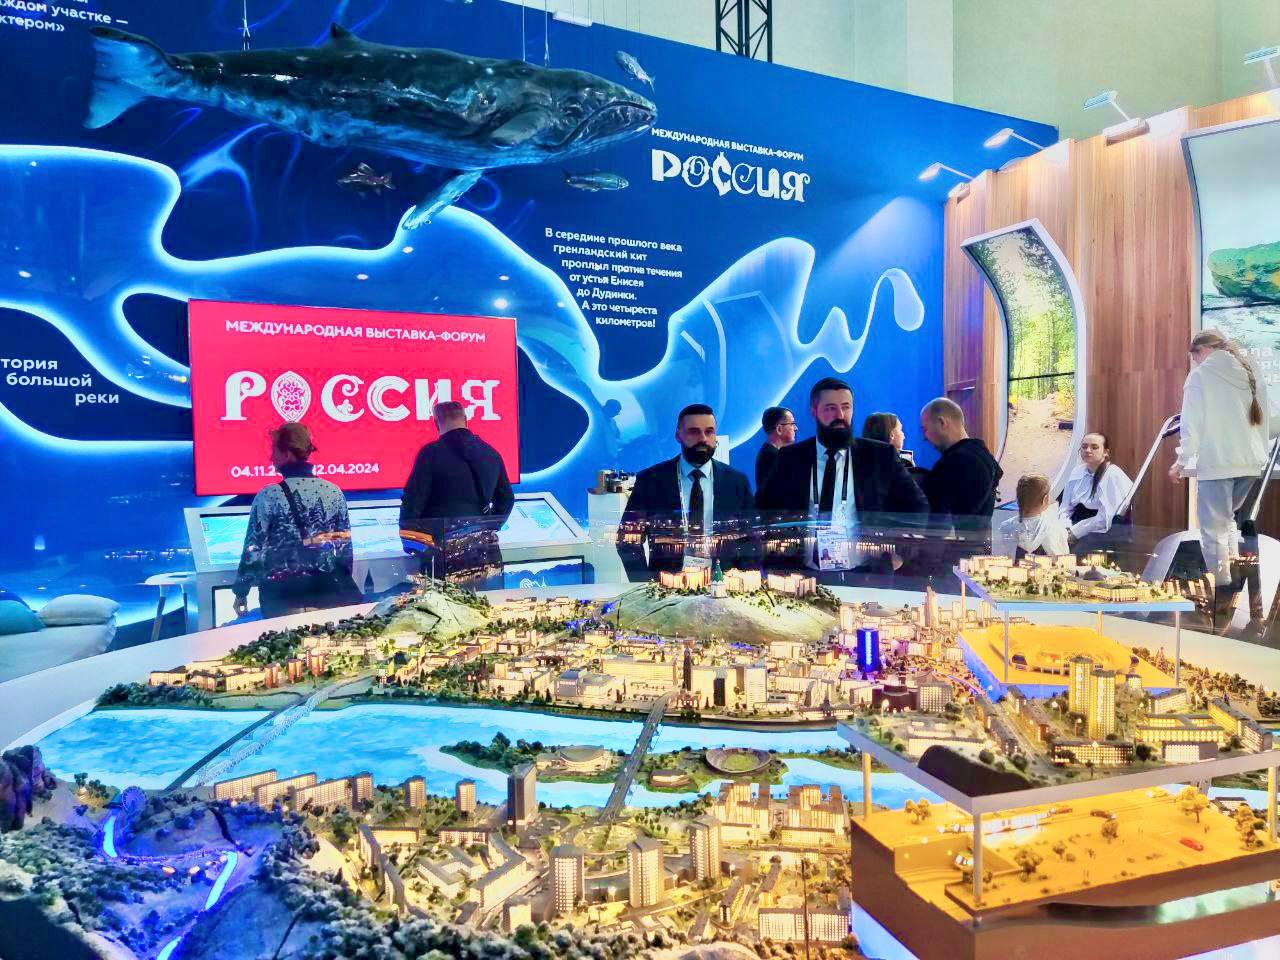 Предприниматели края приняли участие в работе выставки-форума «Россия» в Москве.